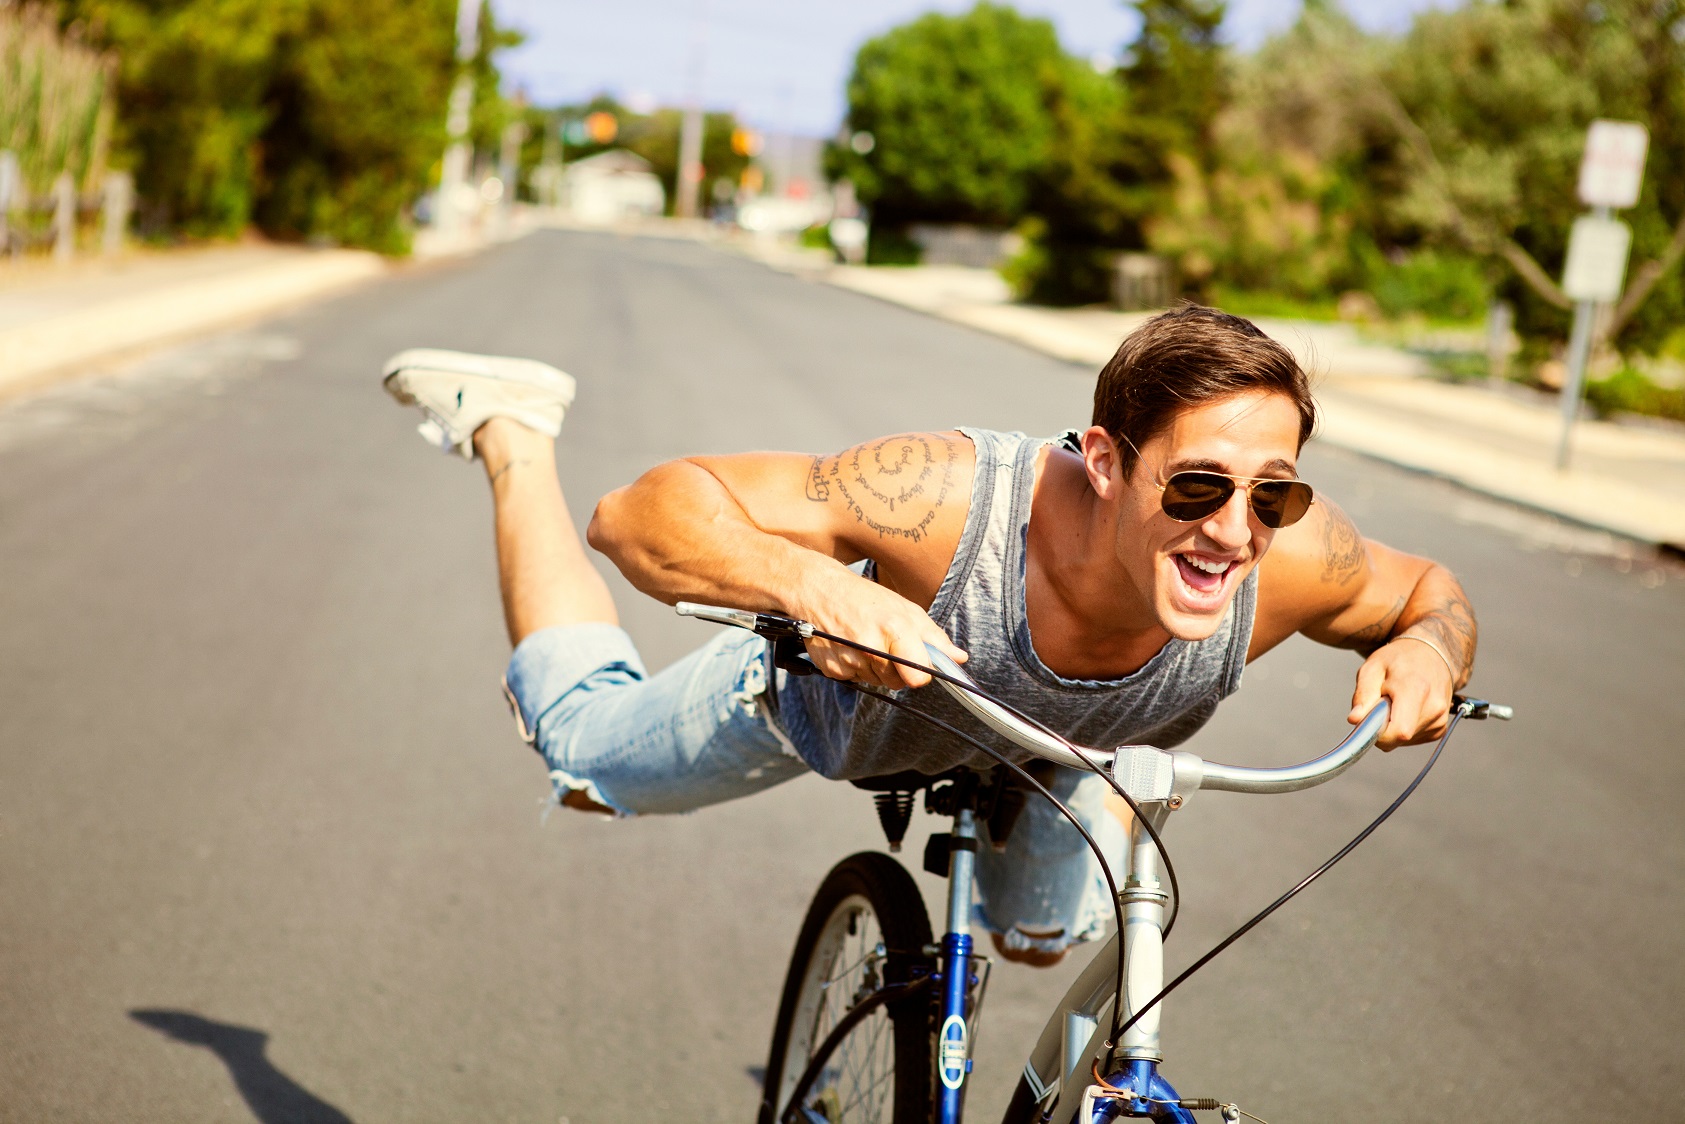 Für Kurzstrecken schwing dich am besten auf´s Fahrrad oder nimm die Öffis